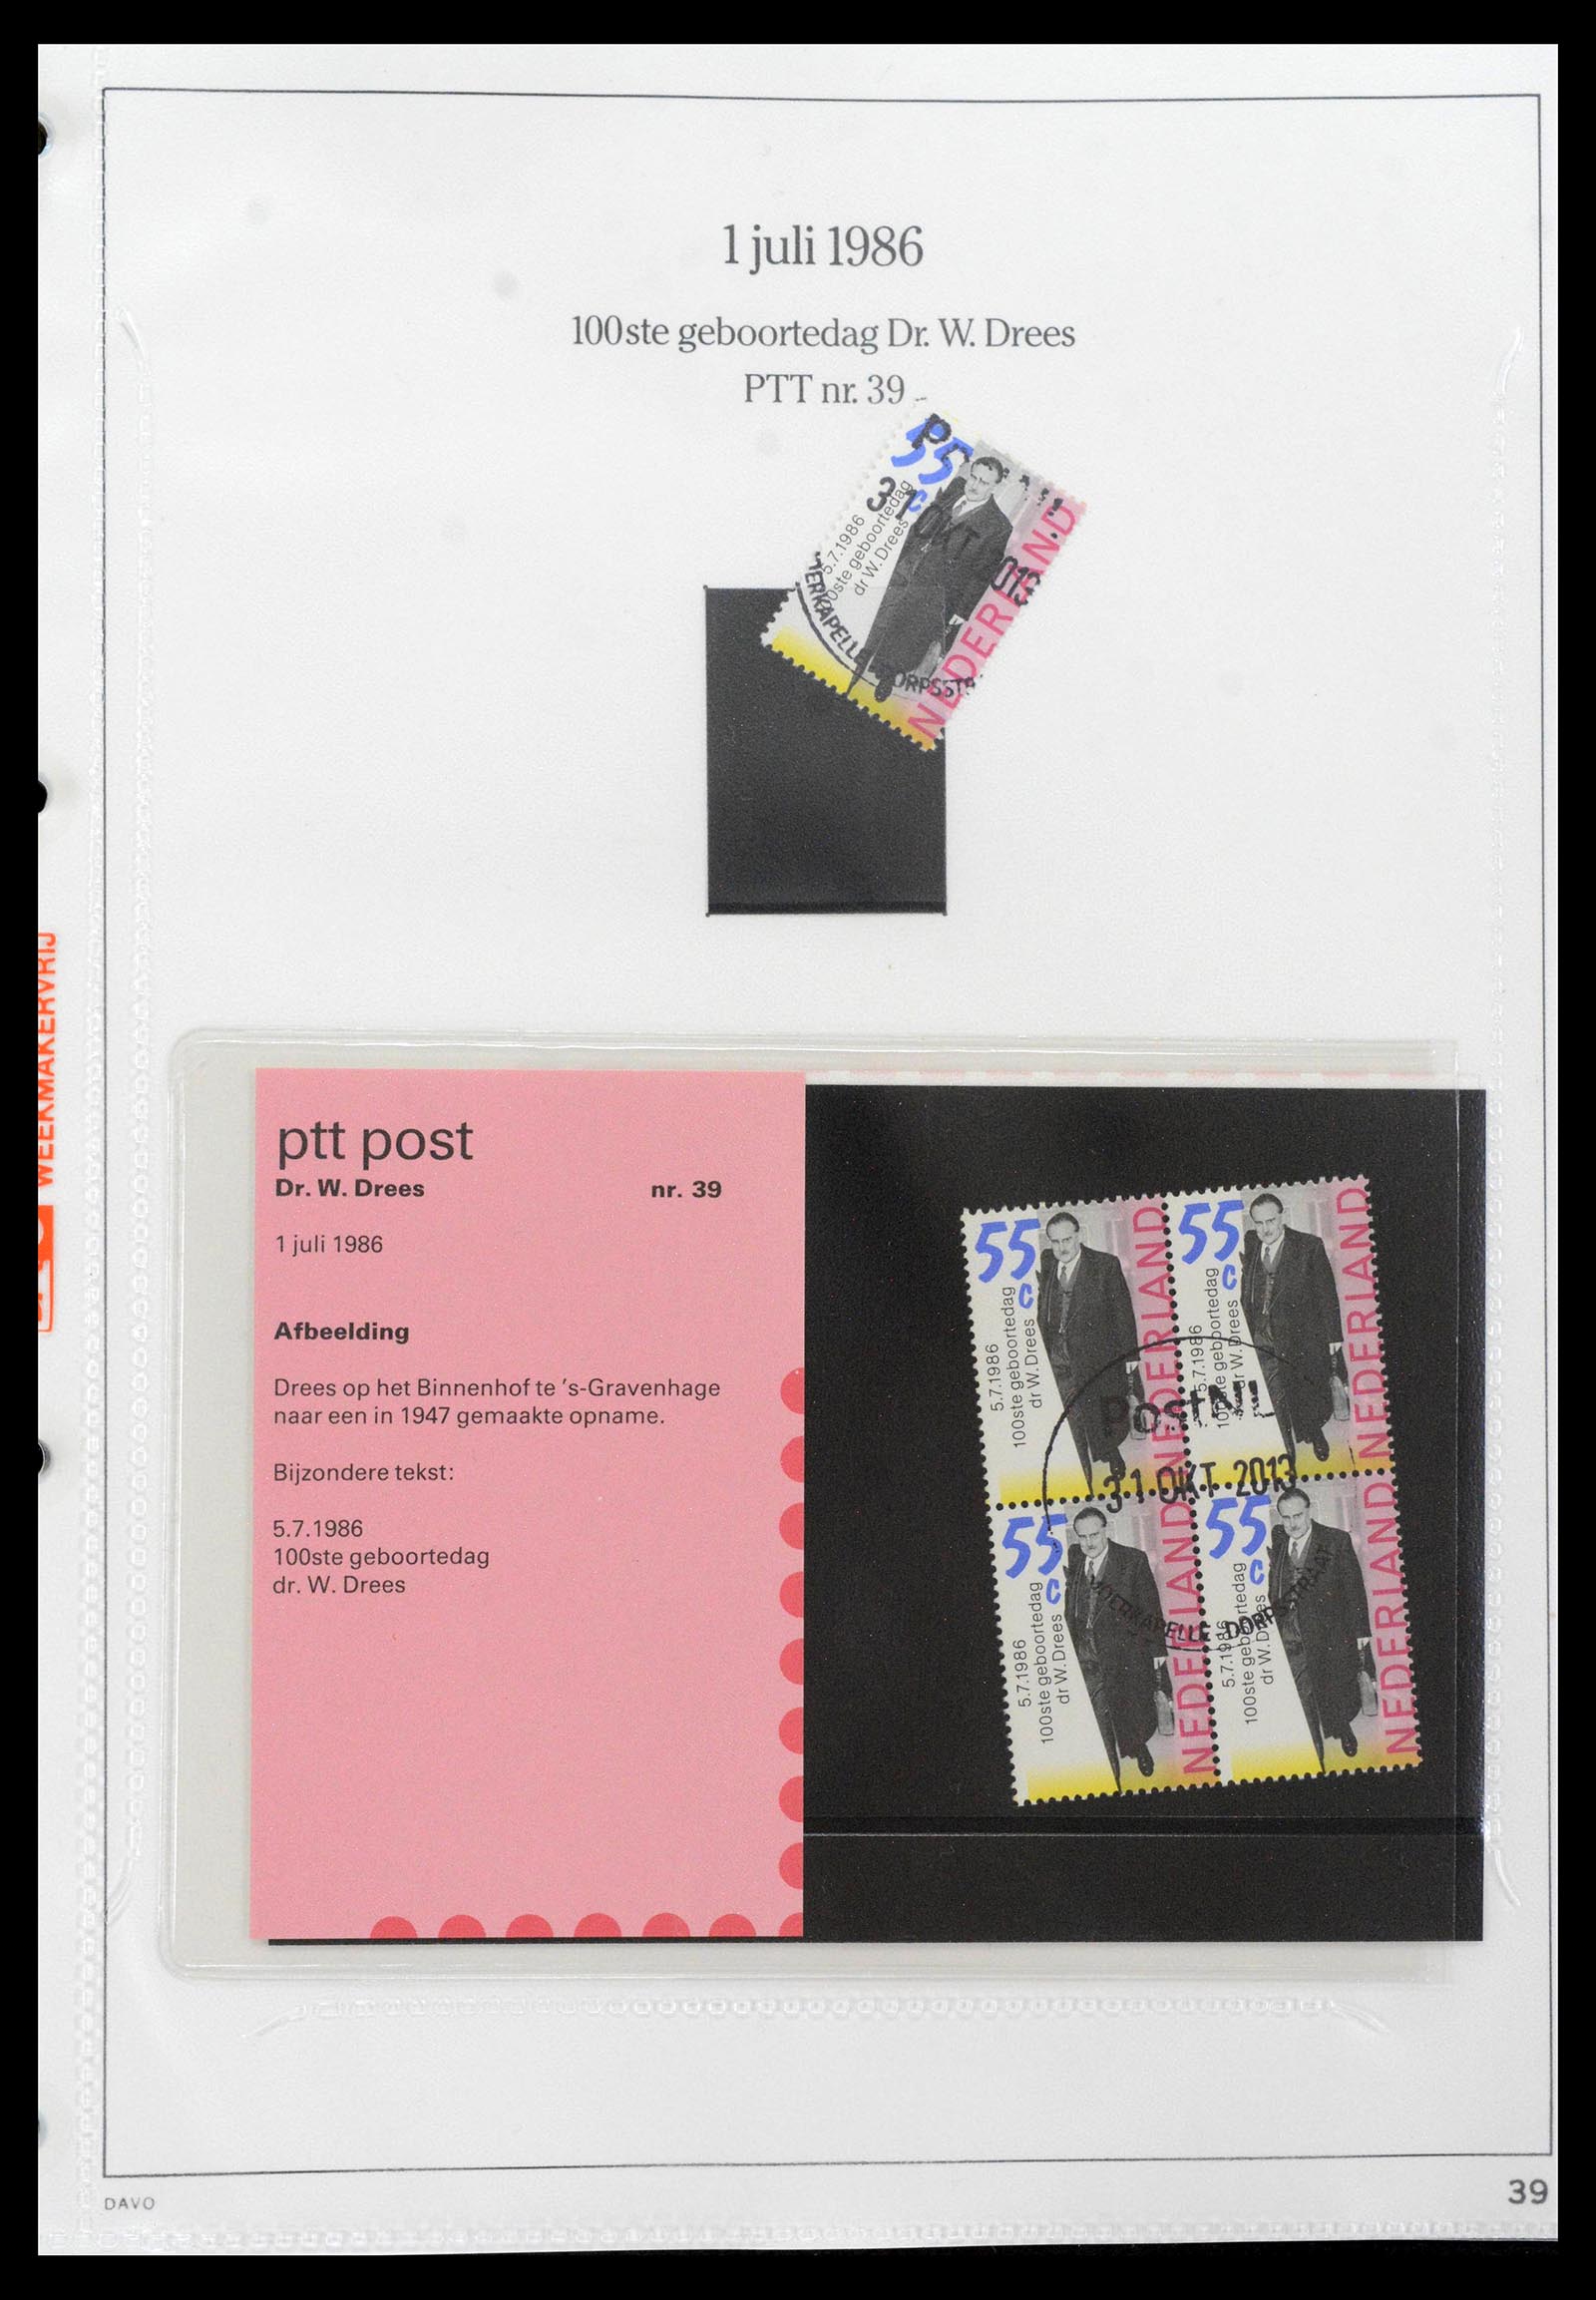 39121 0039 - Stamp collection 39121 Netherlands presentationpacks 1982-2001.